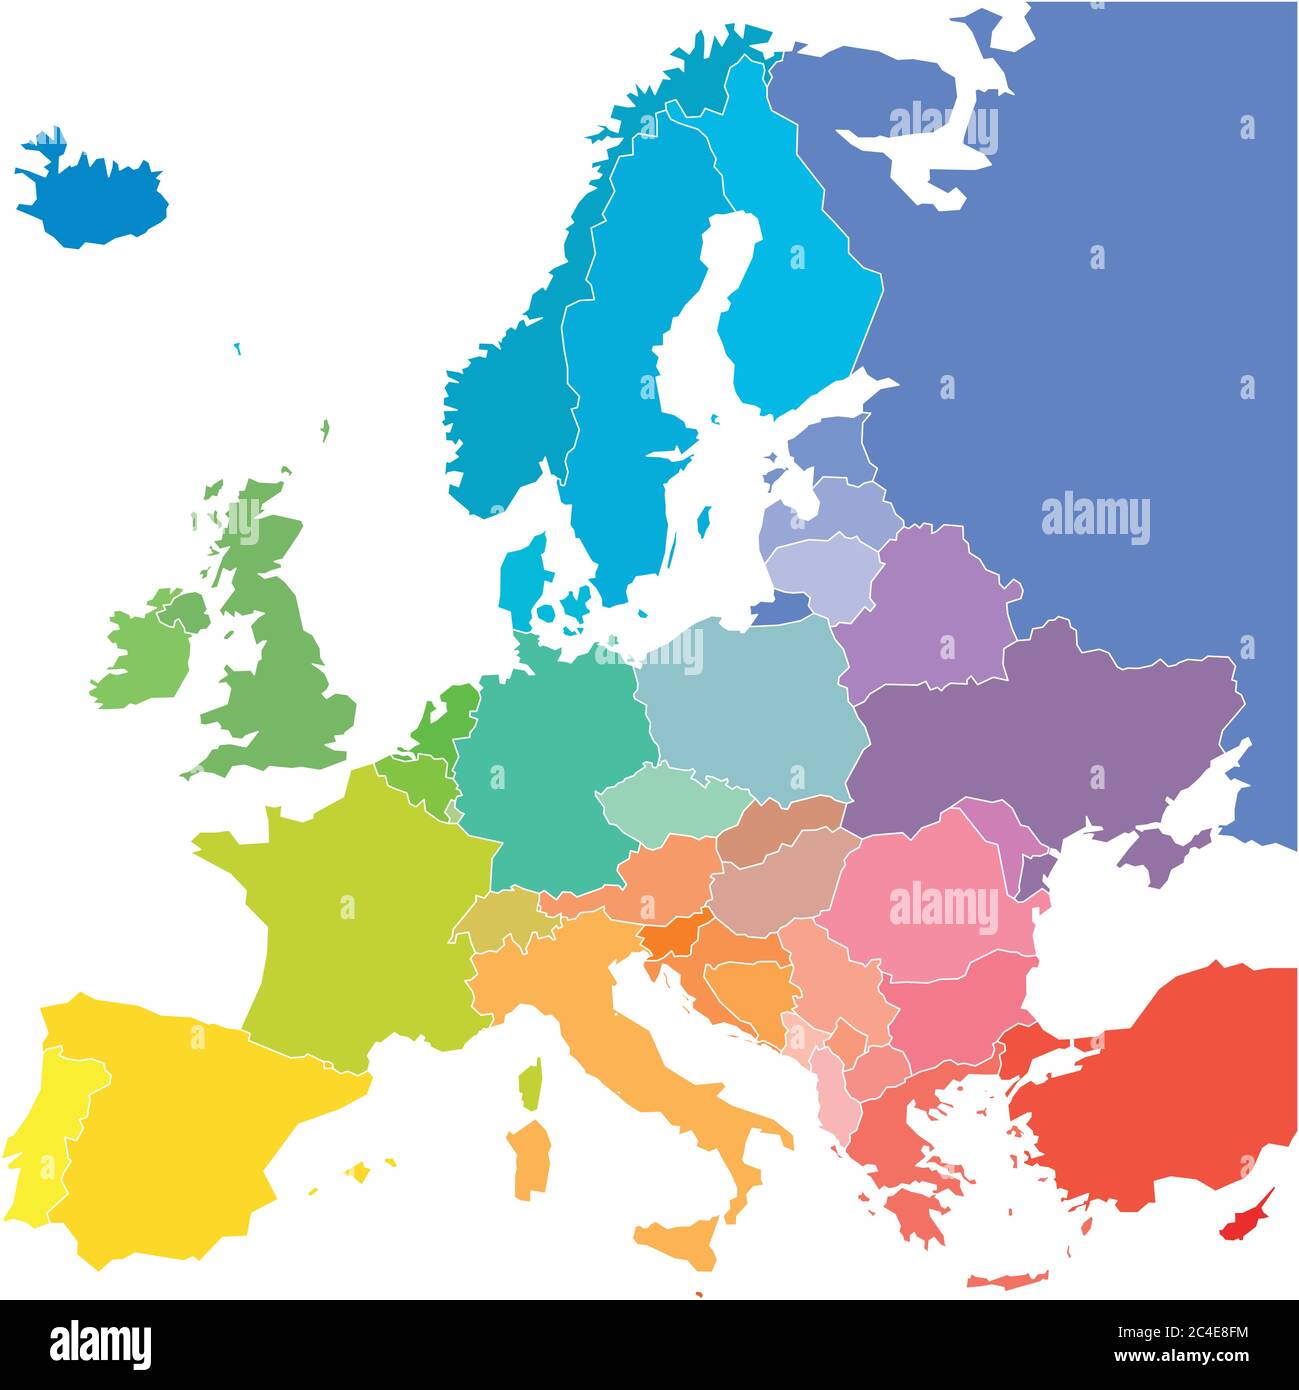 Mappa dell'Europa in colori dello spettro arcobaleno. Con nomi di paesi europei. Illustrazione Vettoriale